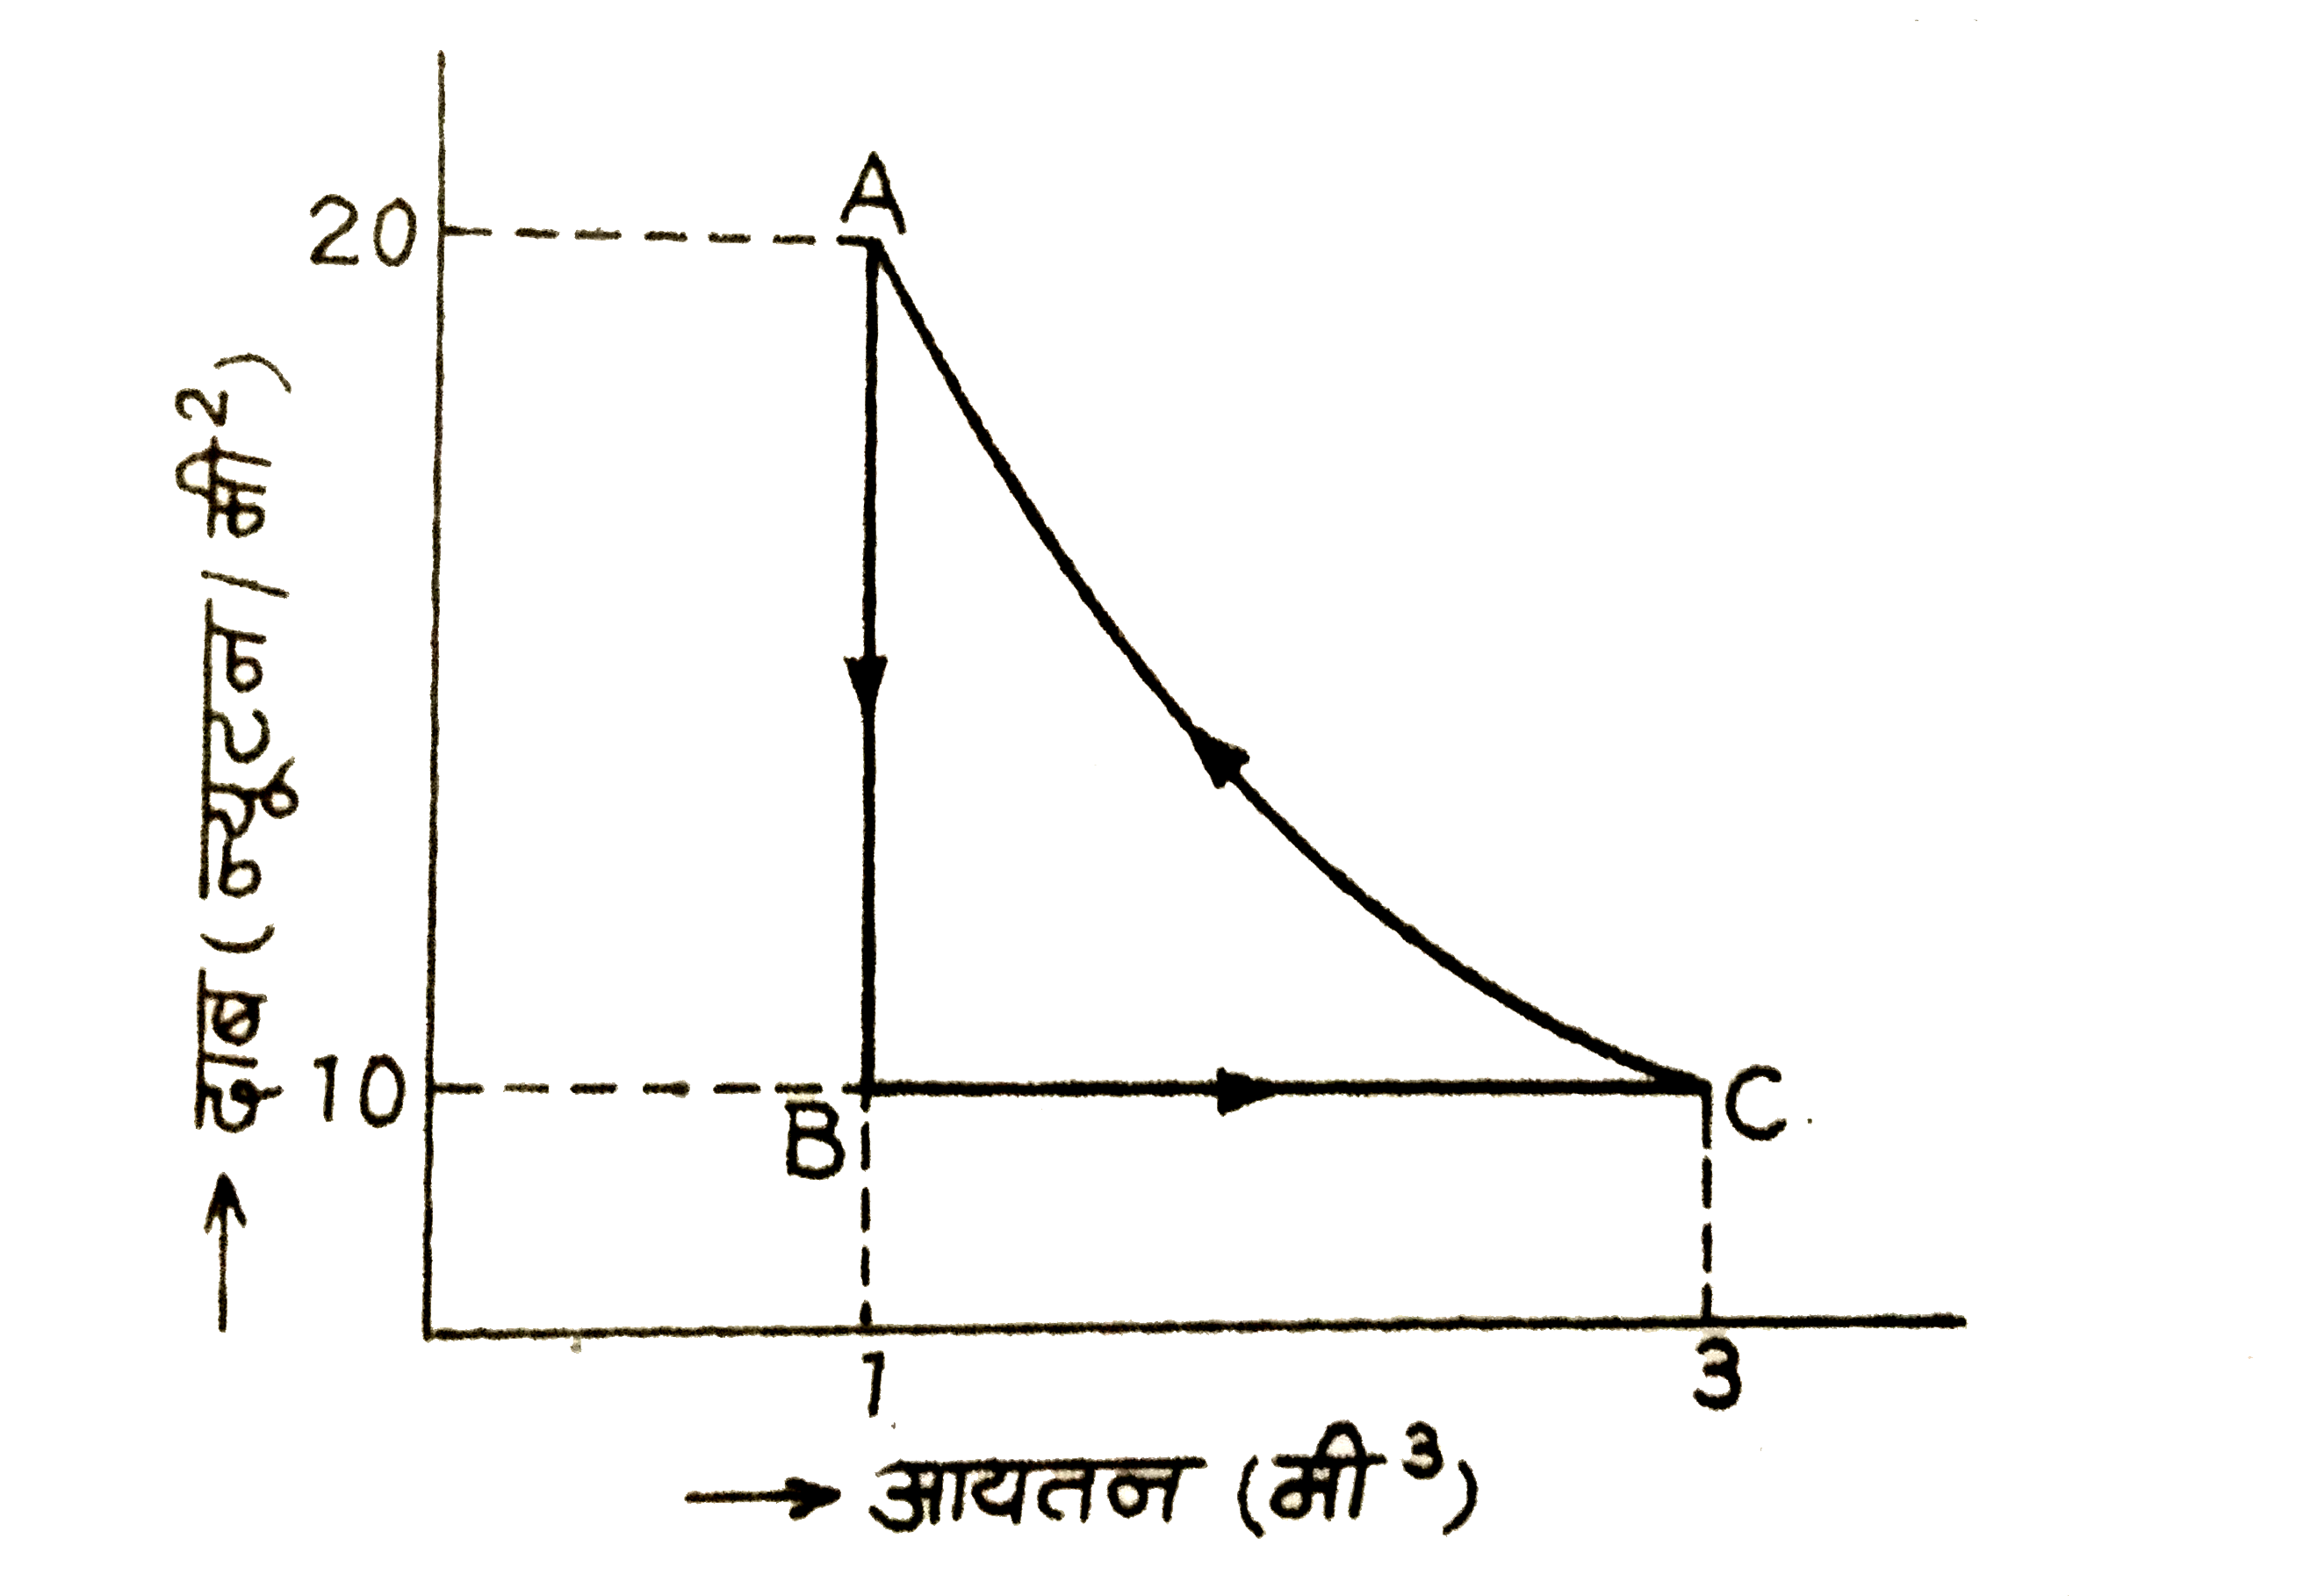 निम्न  चित्र  में किसी  आदर्श  गैस  के एक  चक्रीय  प्रक्रम  का दाब - आयतन  आरेख  दर्शाया  गया  है । गैस  की आन्तरिक  ऊर्जा  का  मान              अवस्था A में 150 जूल , अवस्था B  में 100  जूल  तथा  अवस्था C में 250  जूल  है । ज्ञात  कीजिए :        (i)  प्रक्रम  AtoB  में  गैस  द्वारा  दी  गई  ऊष्मा ,      (ii)  प्रक्रम BtoC  में  गैस  द्वारा  कृत  कार्य ,      (iii) प्रक्रम  BtoC  में  गैस  द्वारा ली  गई  ऊष्मा ।